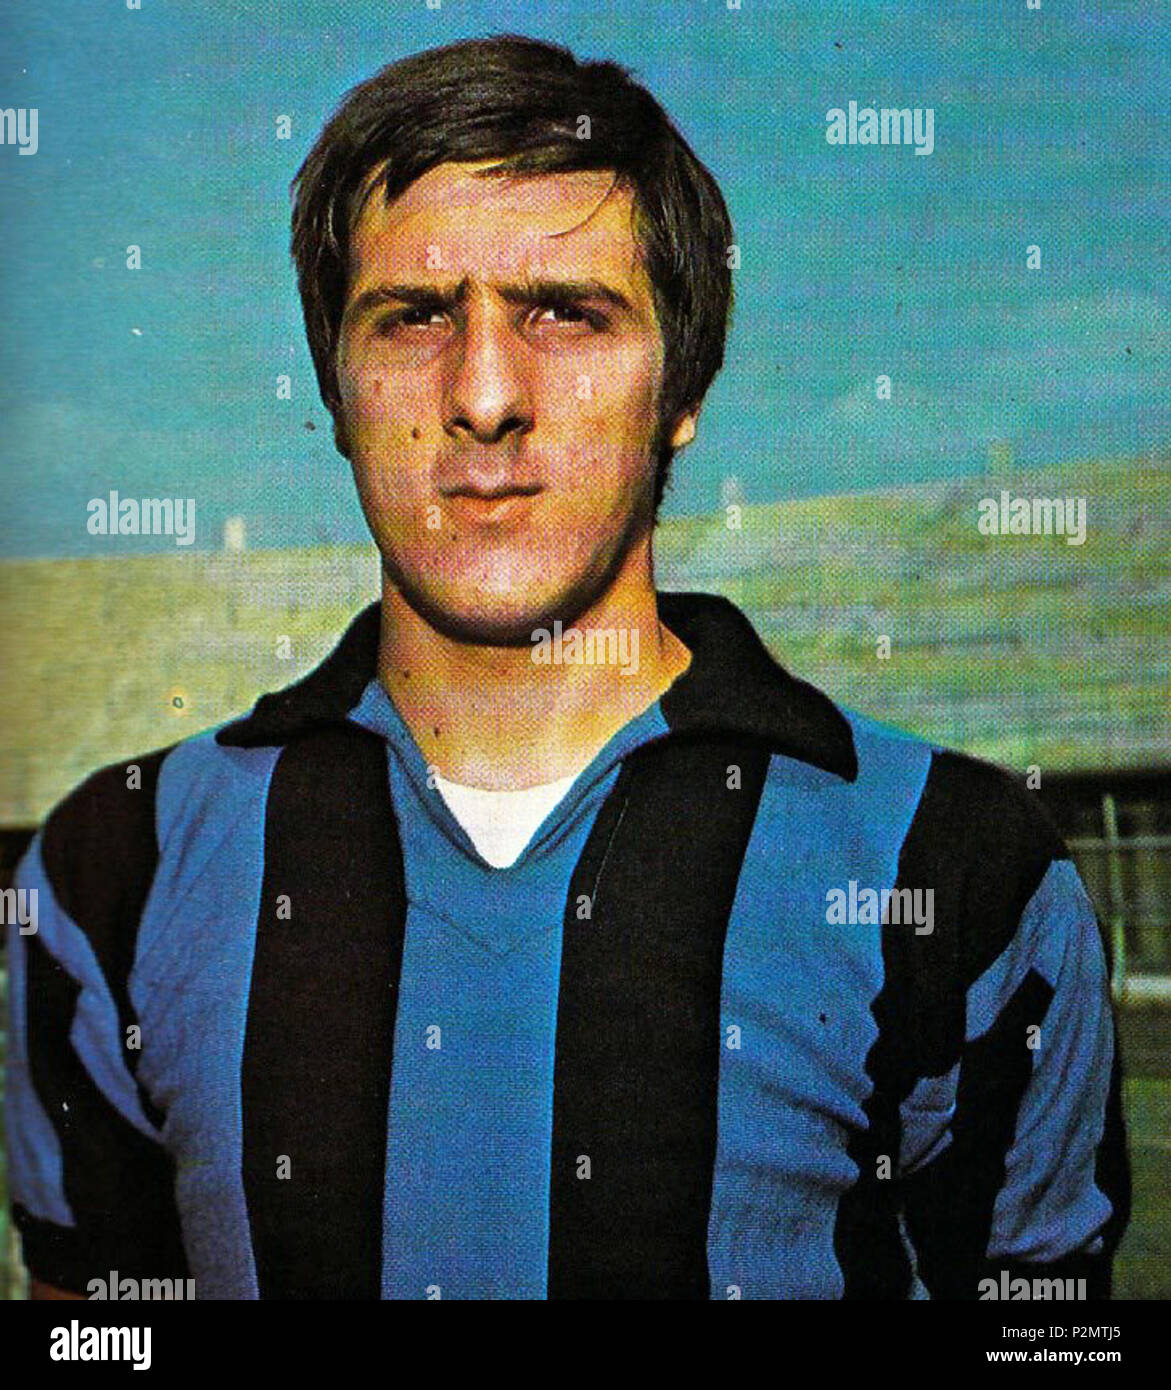 Italiano: Gaetano Scirea con la maglia dell'Atalanta (1972-74). English: Gaetano  Scirea with the Atalanta